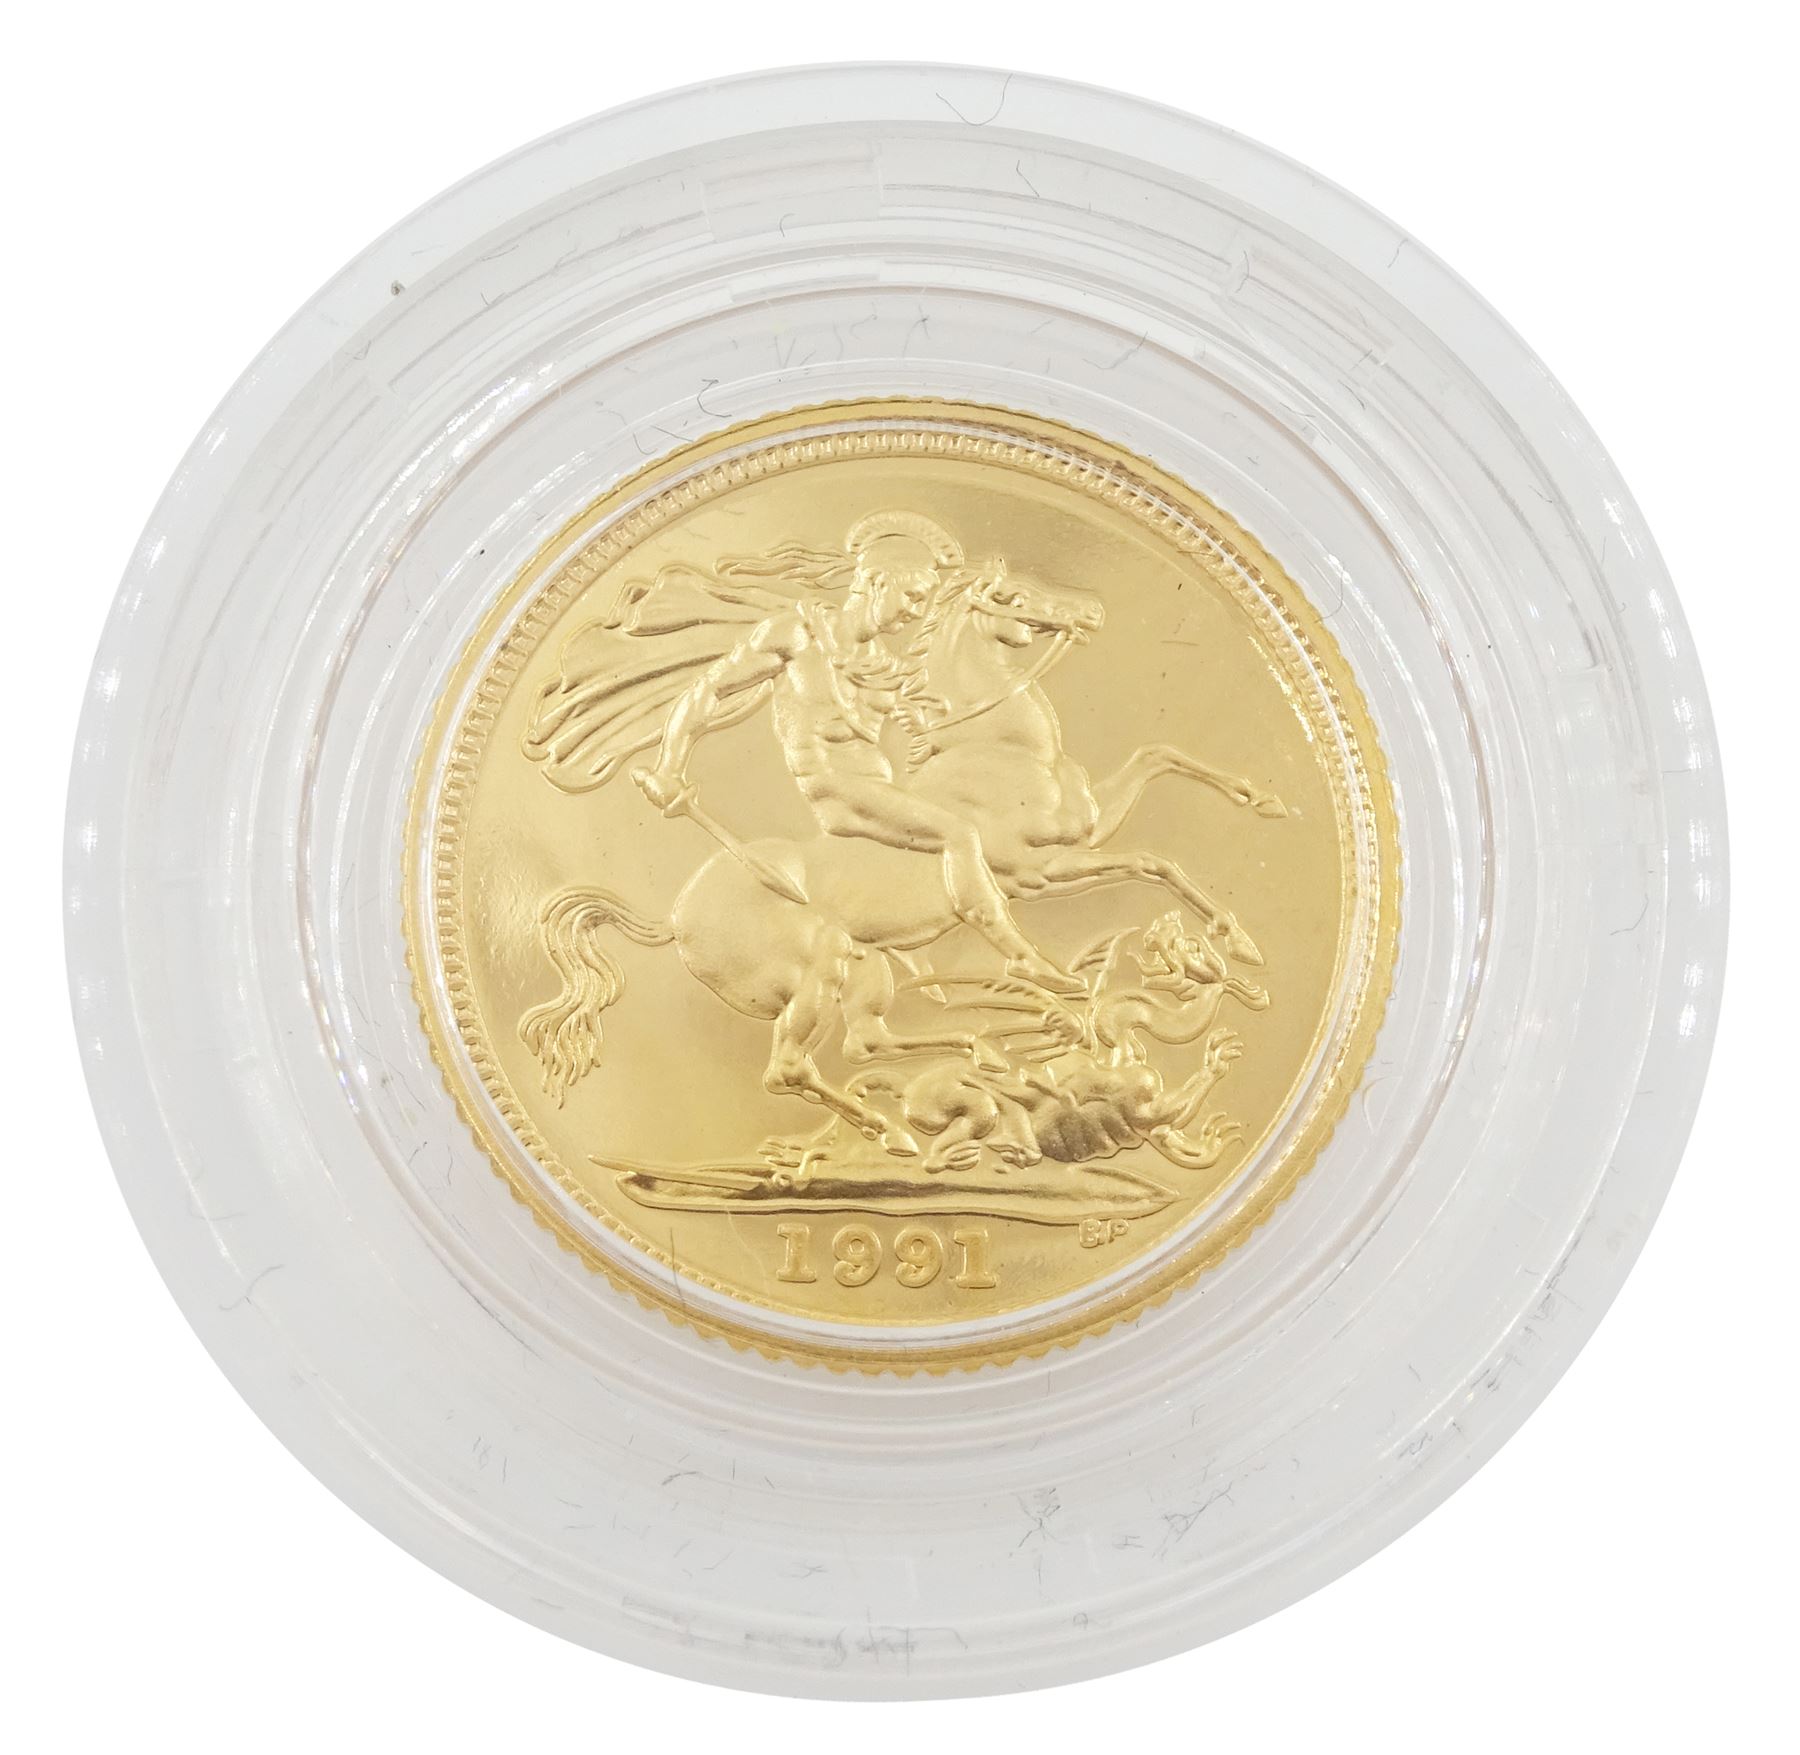 Queen Elizabeth II 1991 gold proof half sovereign coin - Image 3 of 3